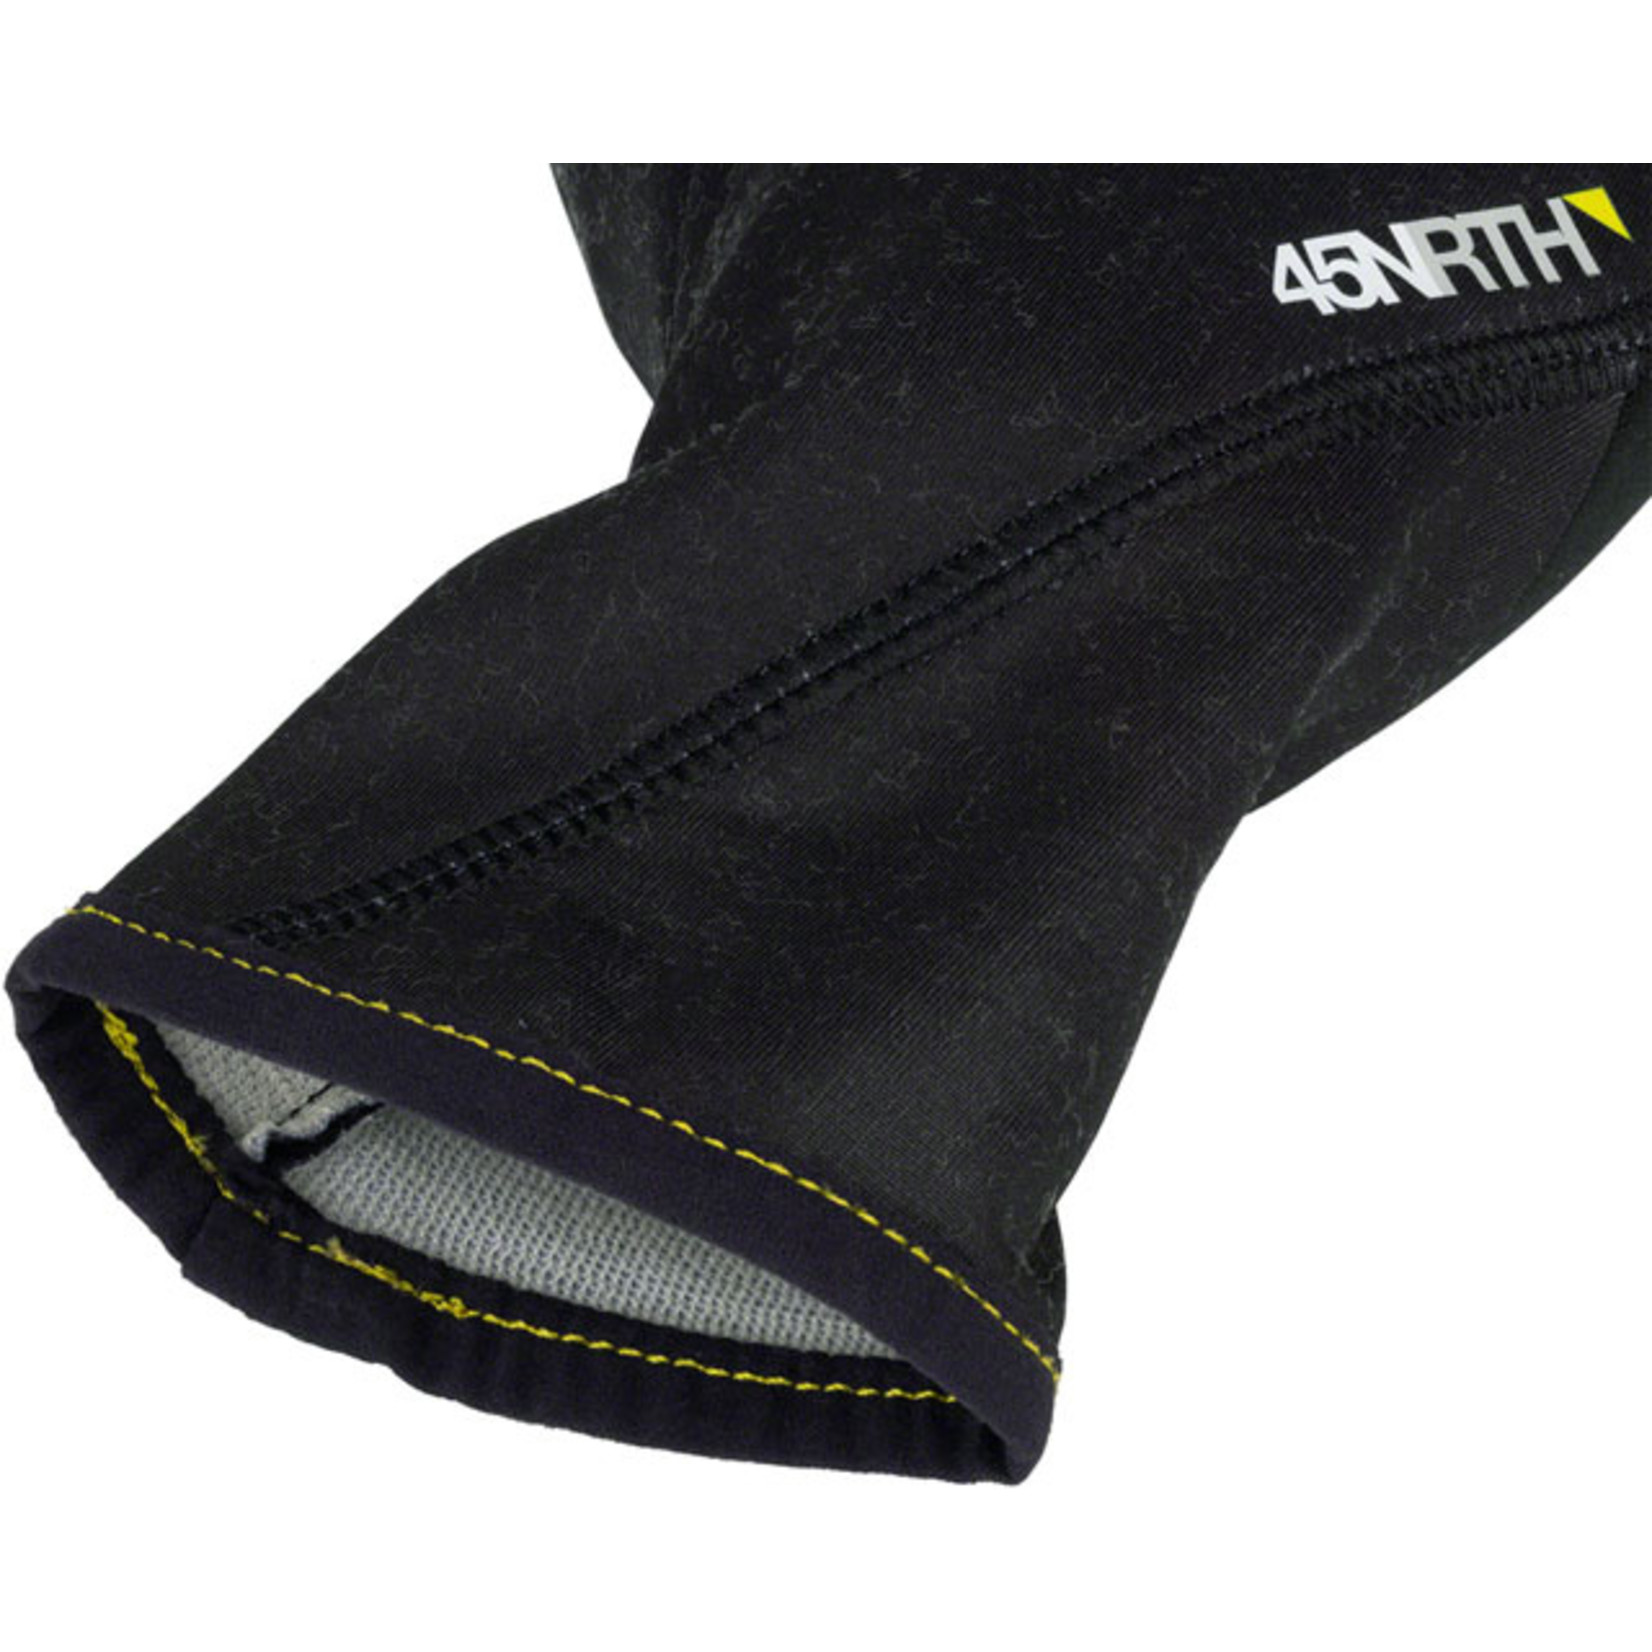 45NRTH 45NRTH Risor Merino Liner Gloves - Black Full Finger Large